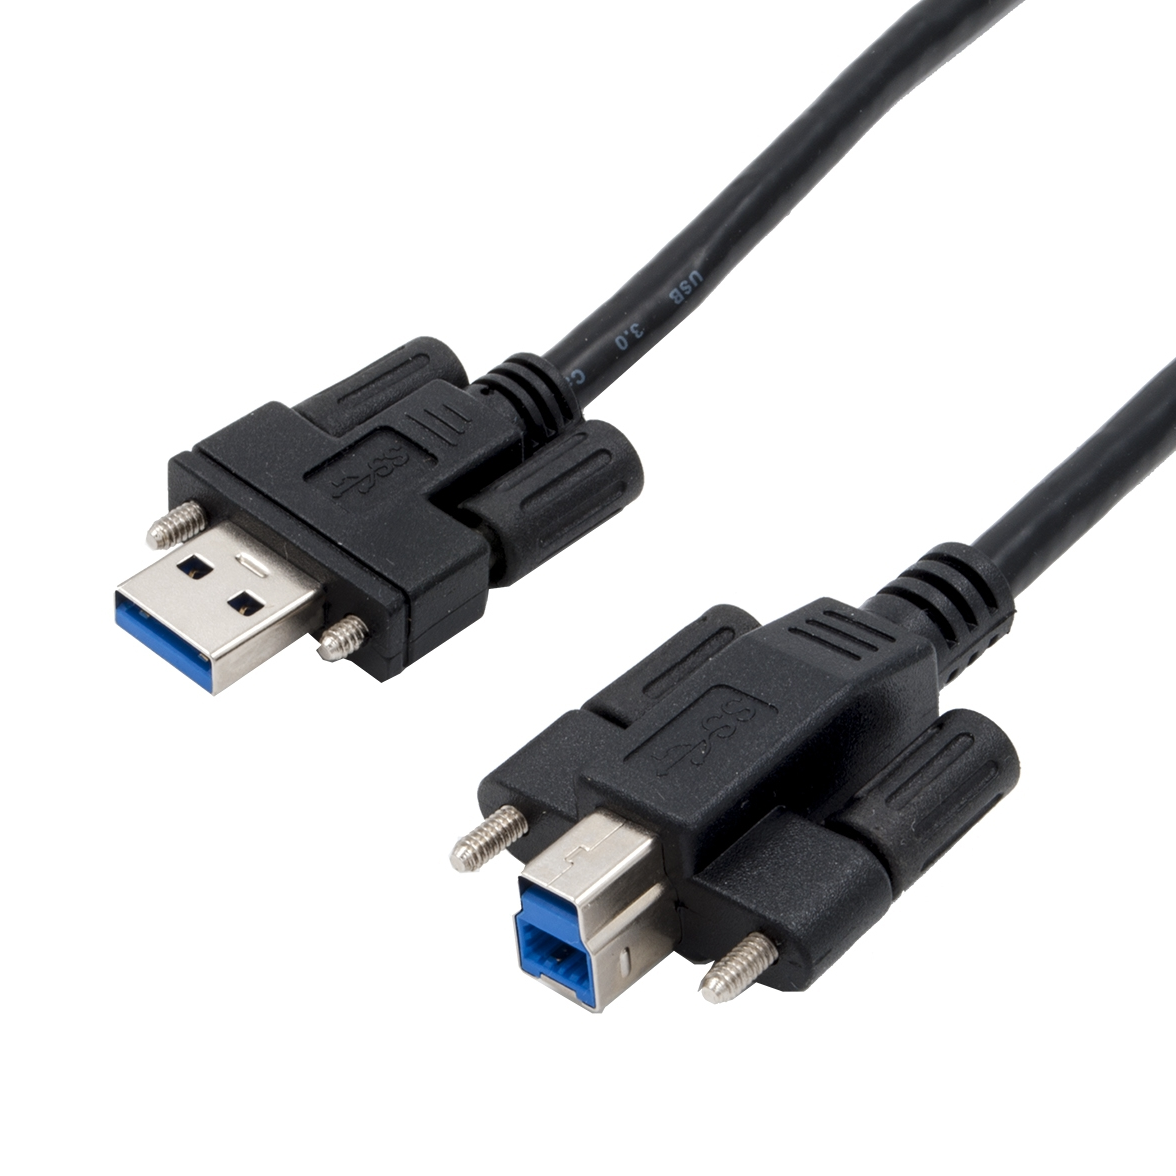 USB 3.0 Kabel AB beidseitig mit Schrauben 2m